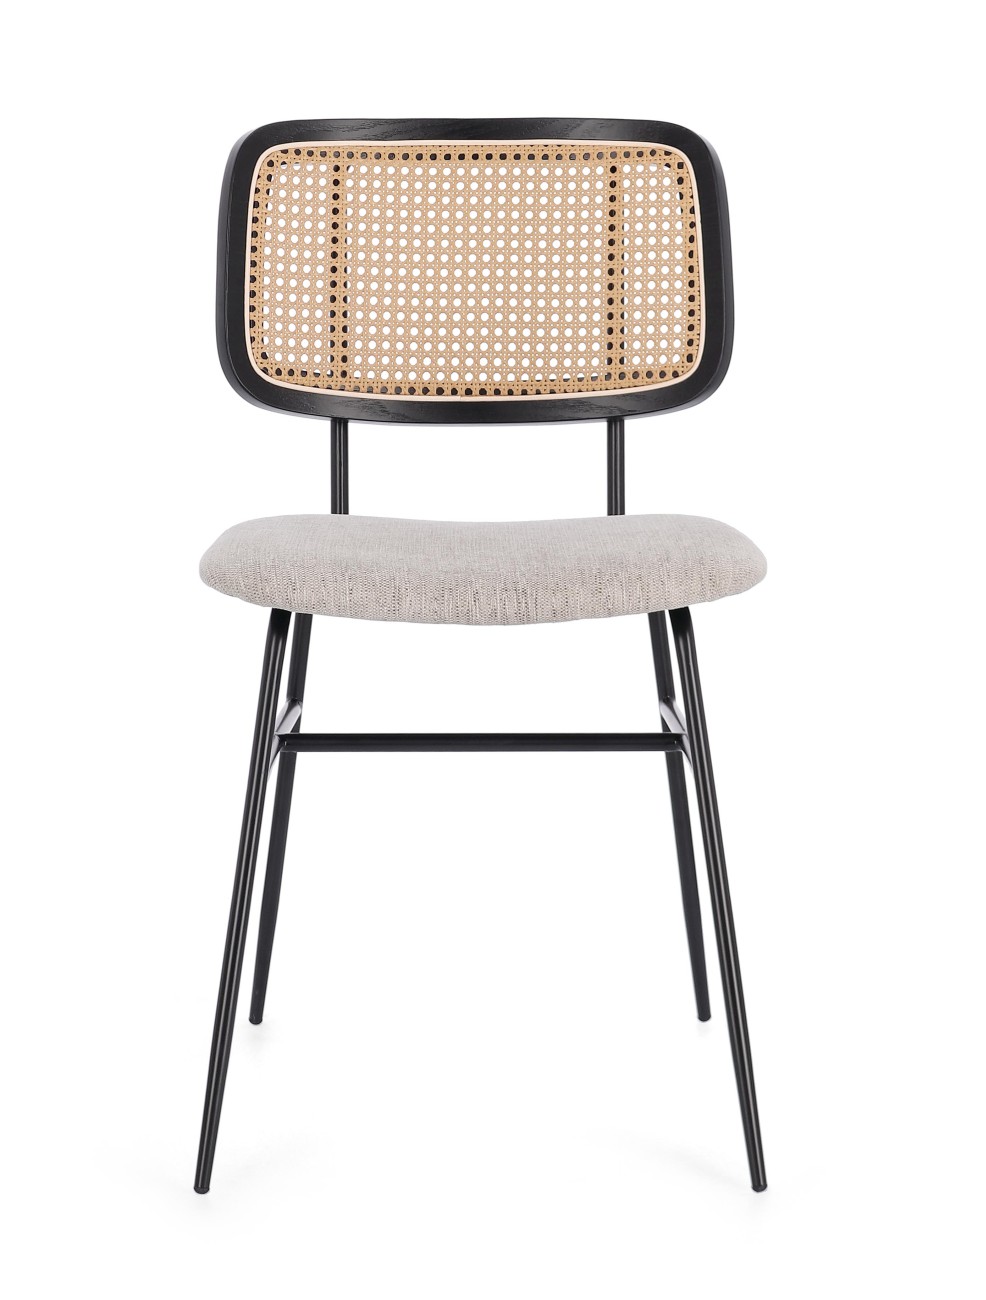 Der Esszimmerstuhl Glenna überzeugt mit seinem modernen Stil. Gefertigt wurde er aus Stoff, welcher einen natürlichen Farbton besitzt. Das Gestell ist aus Metall und hat eine schwarze Farbe. Der Stuhl besitzt eine Sitzhöhe von 48 cm.